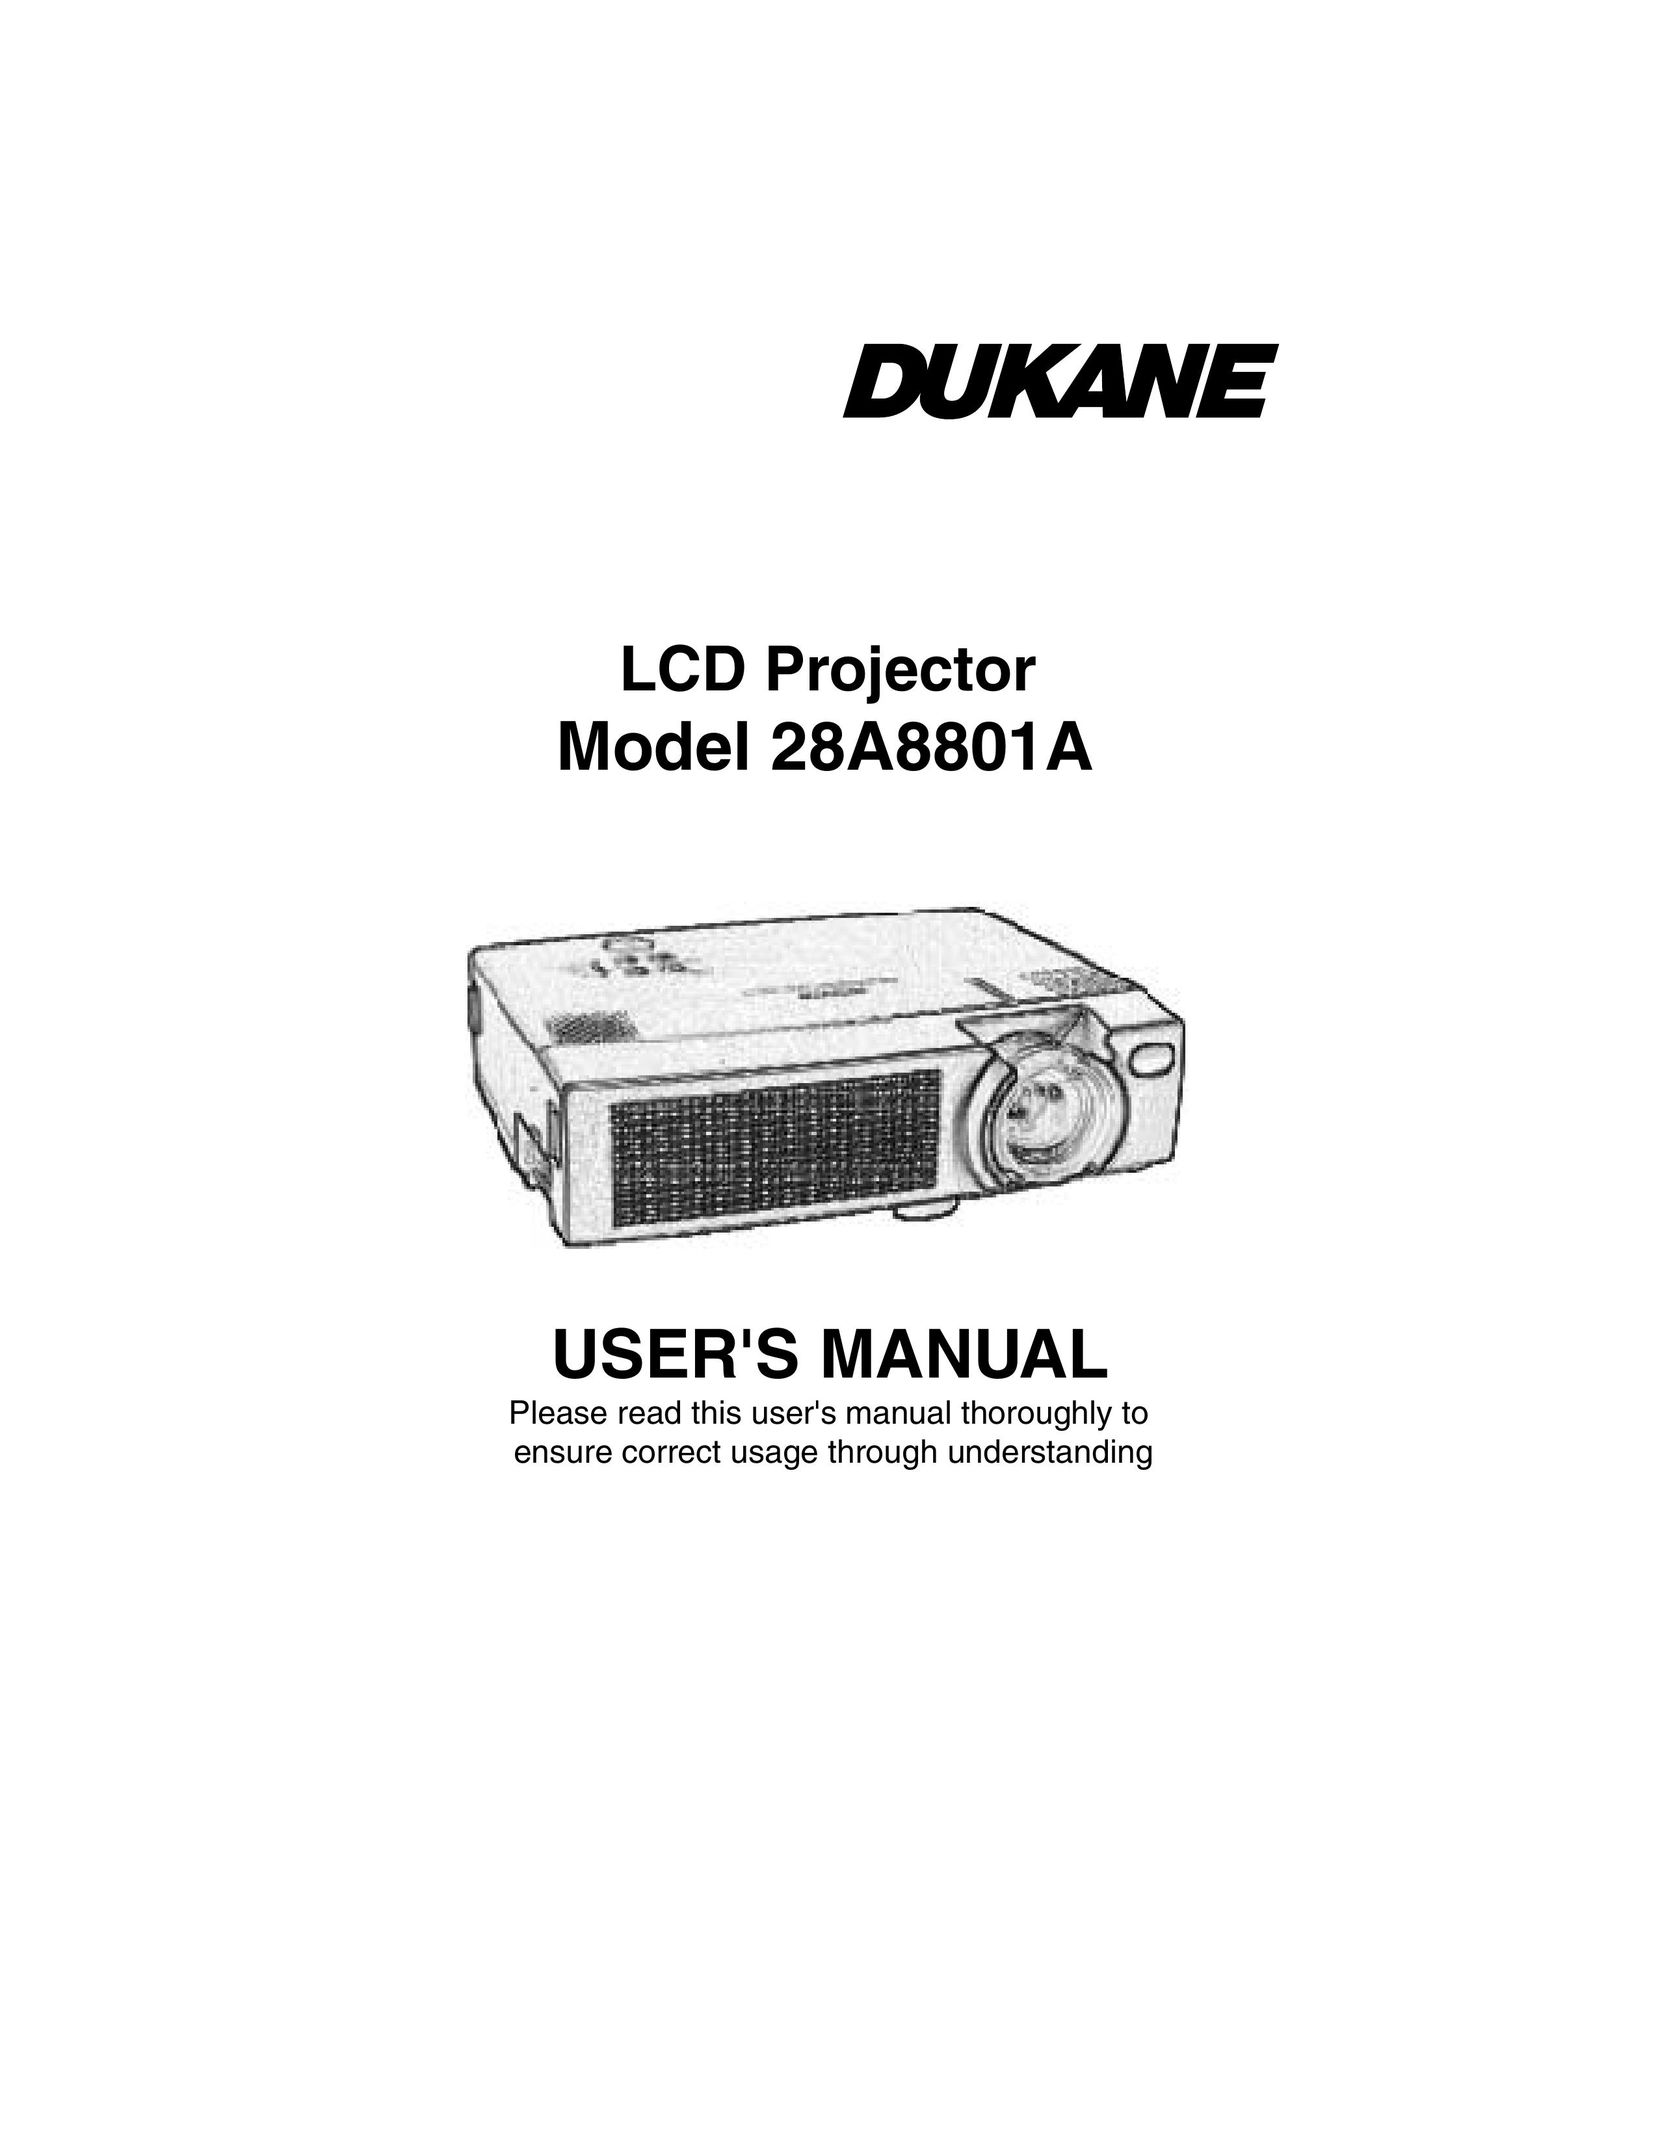 Dukane 28A8801A Projector User Manual